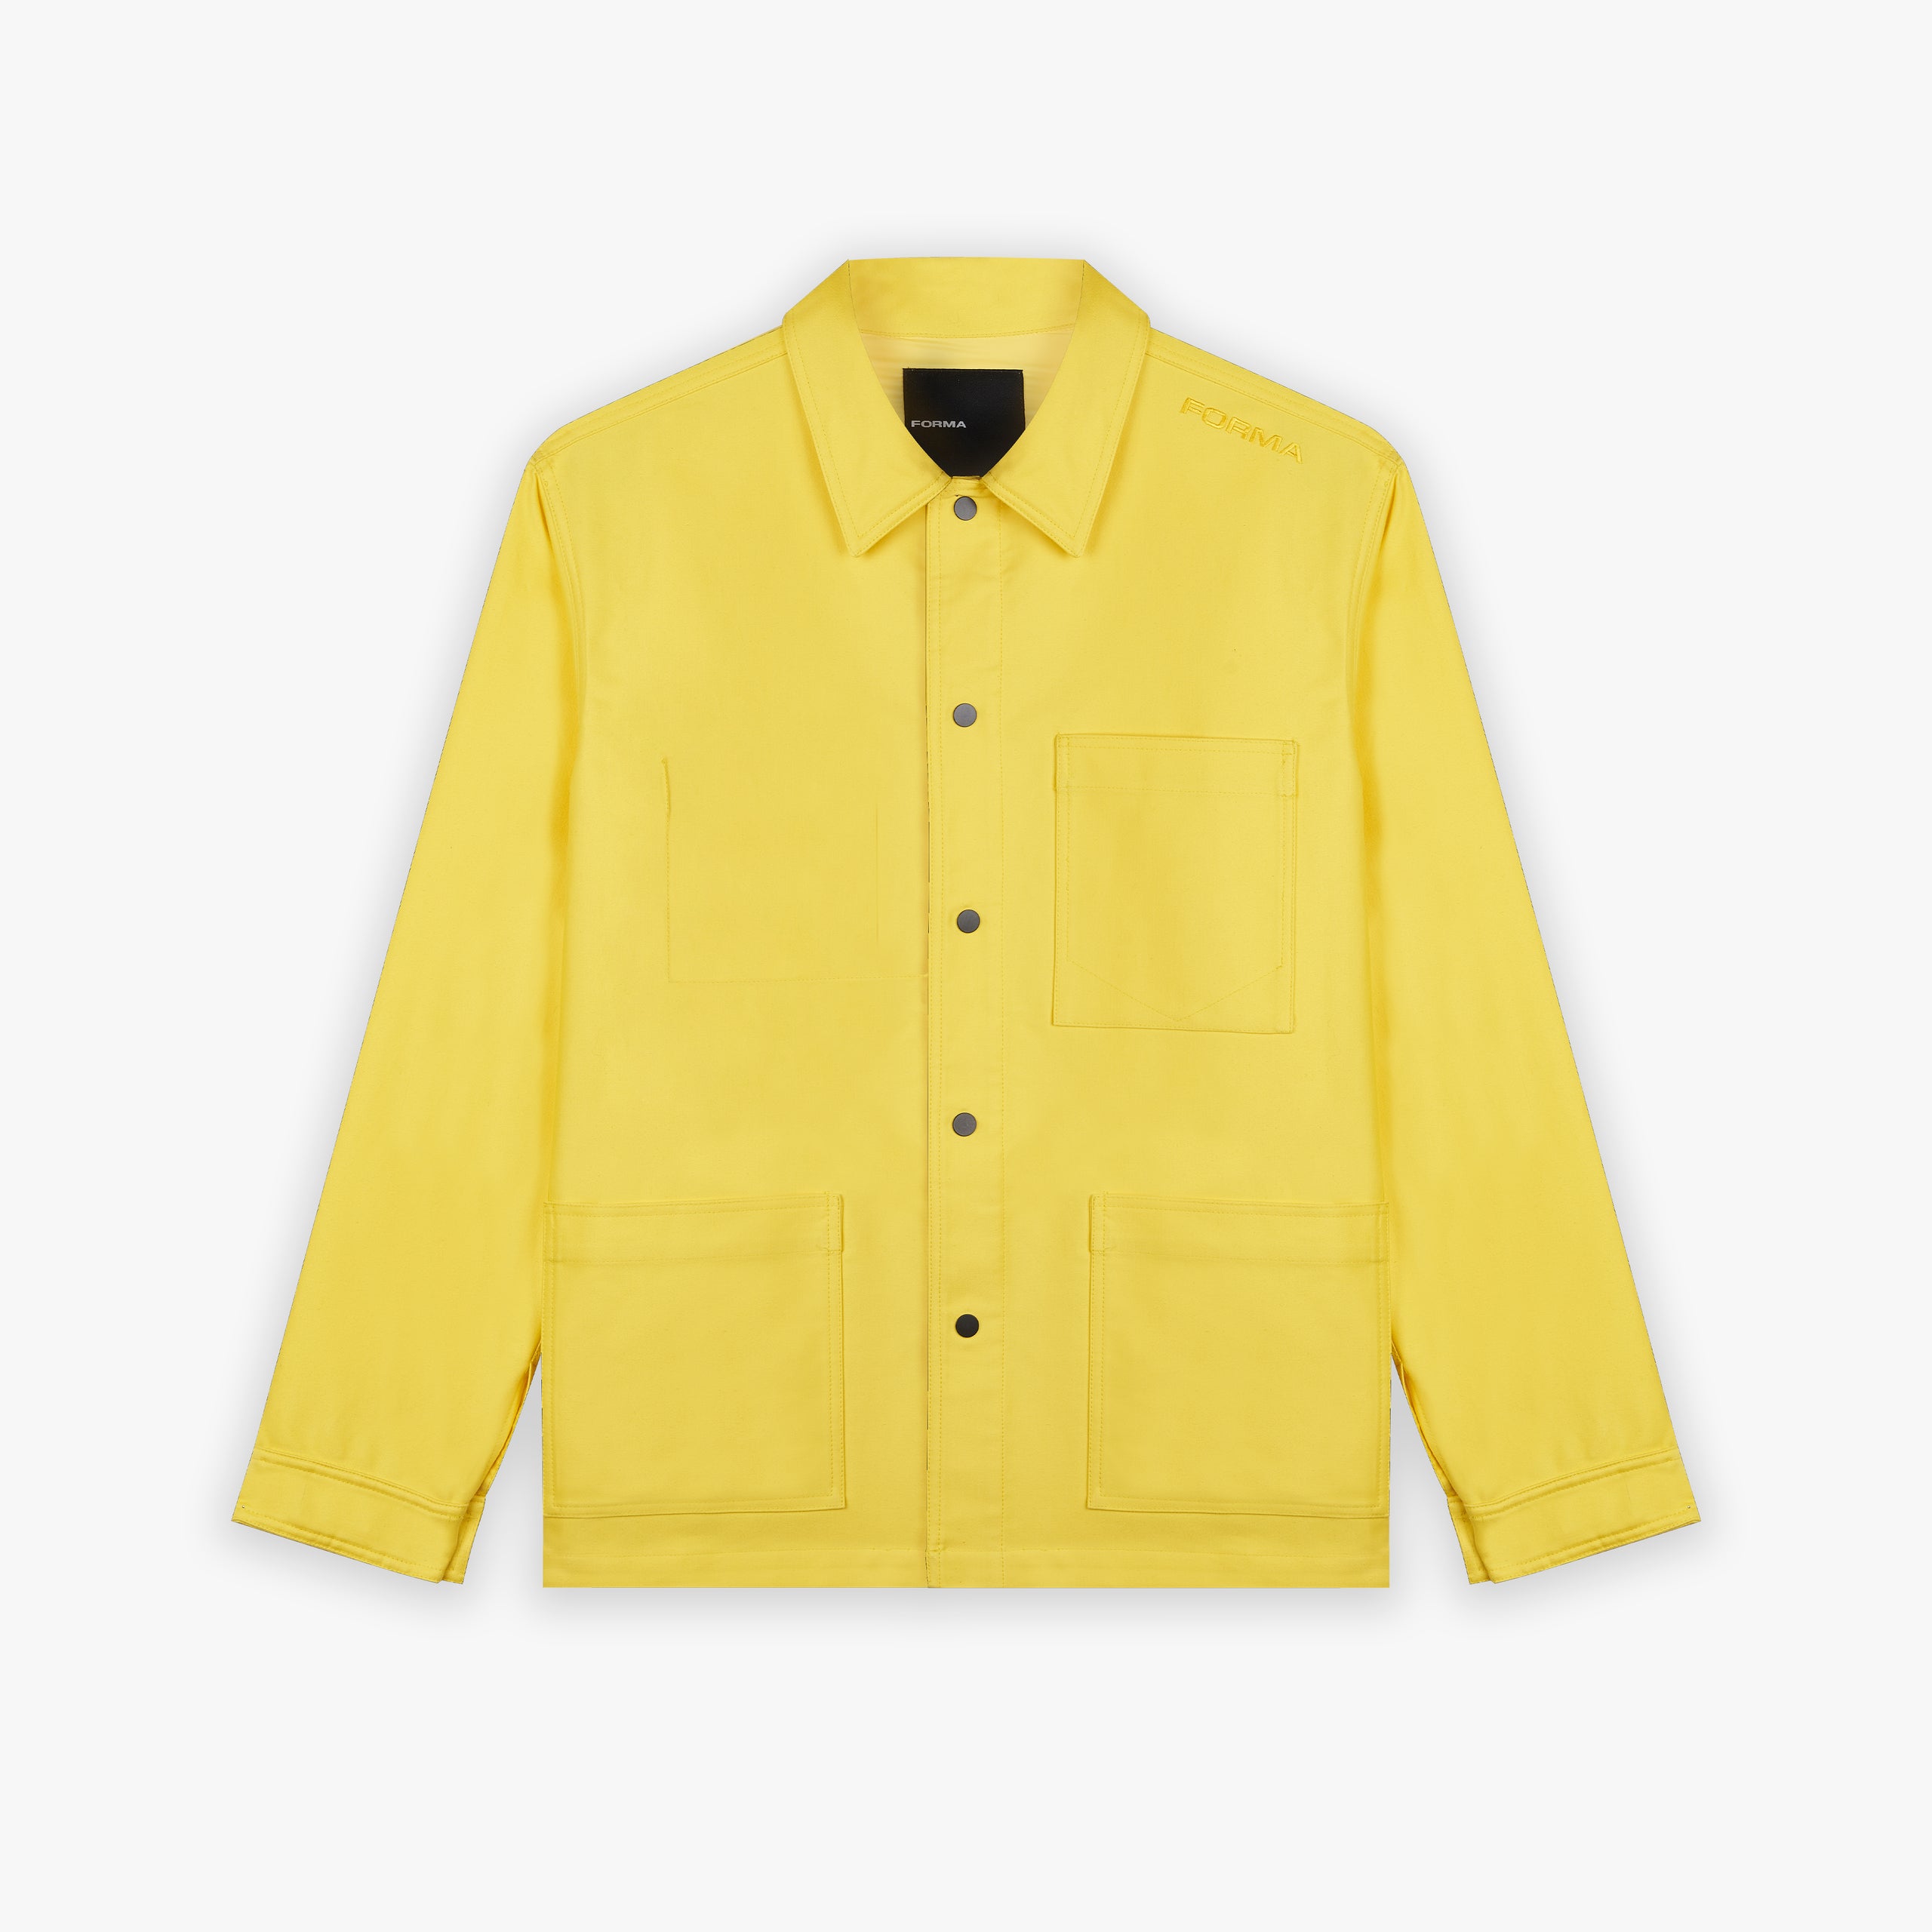 Forma yellow work jacket